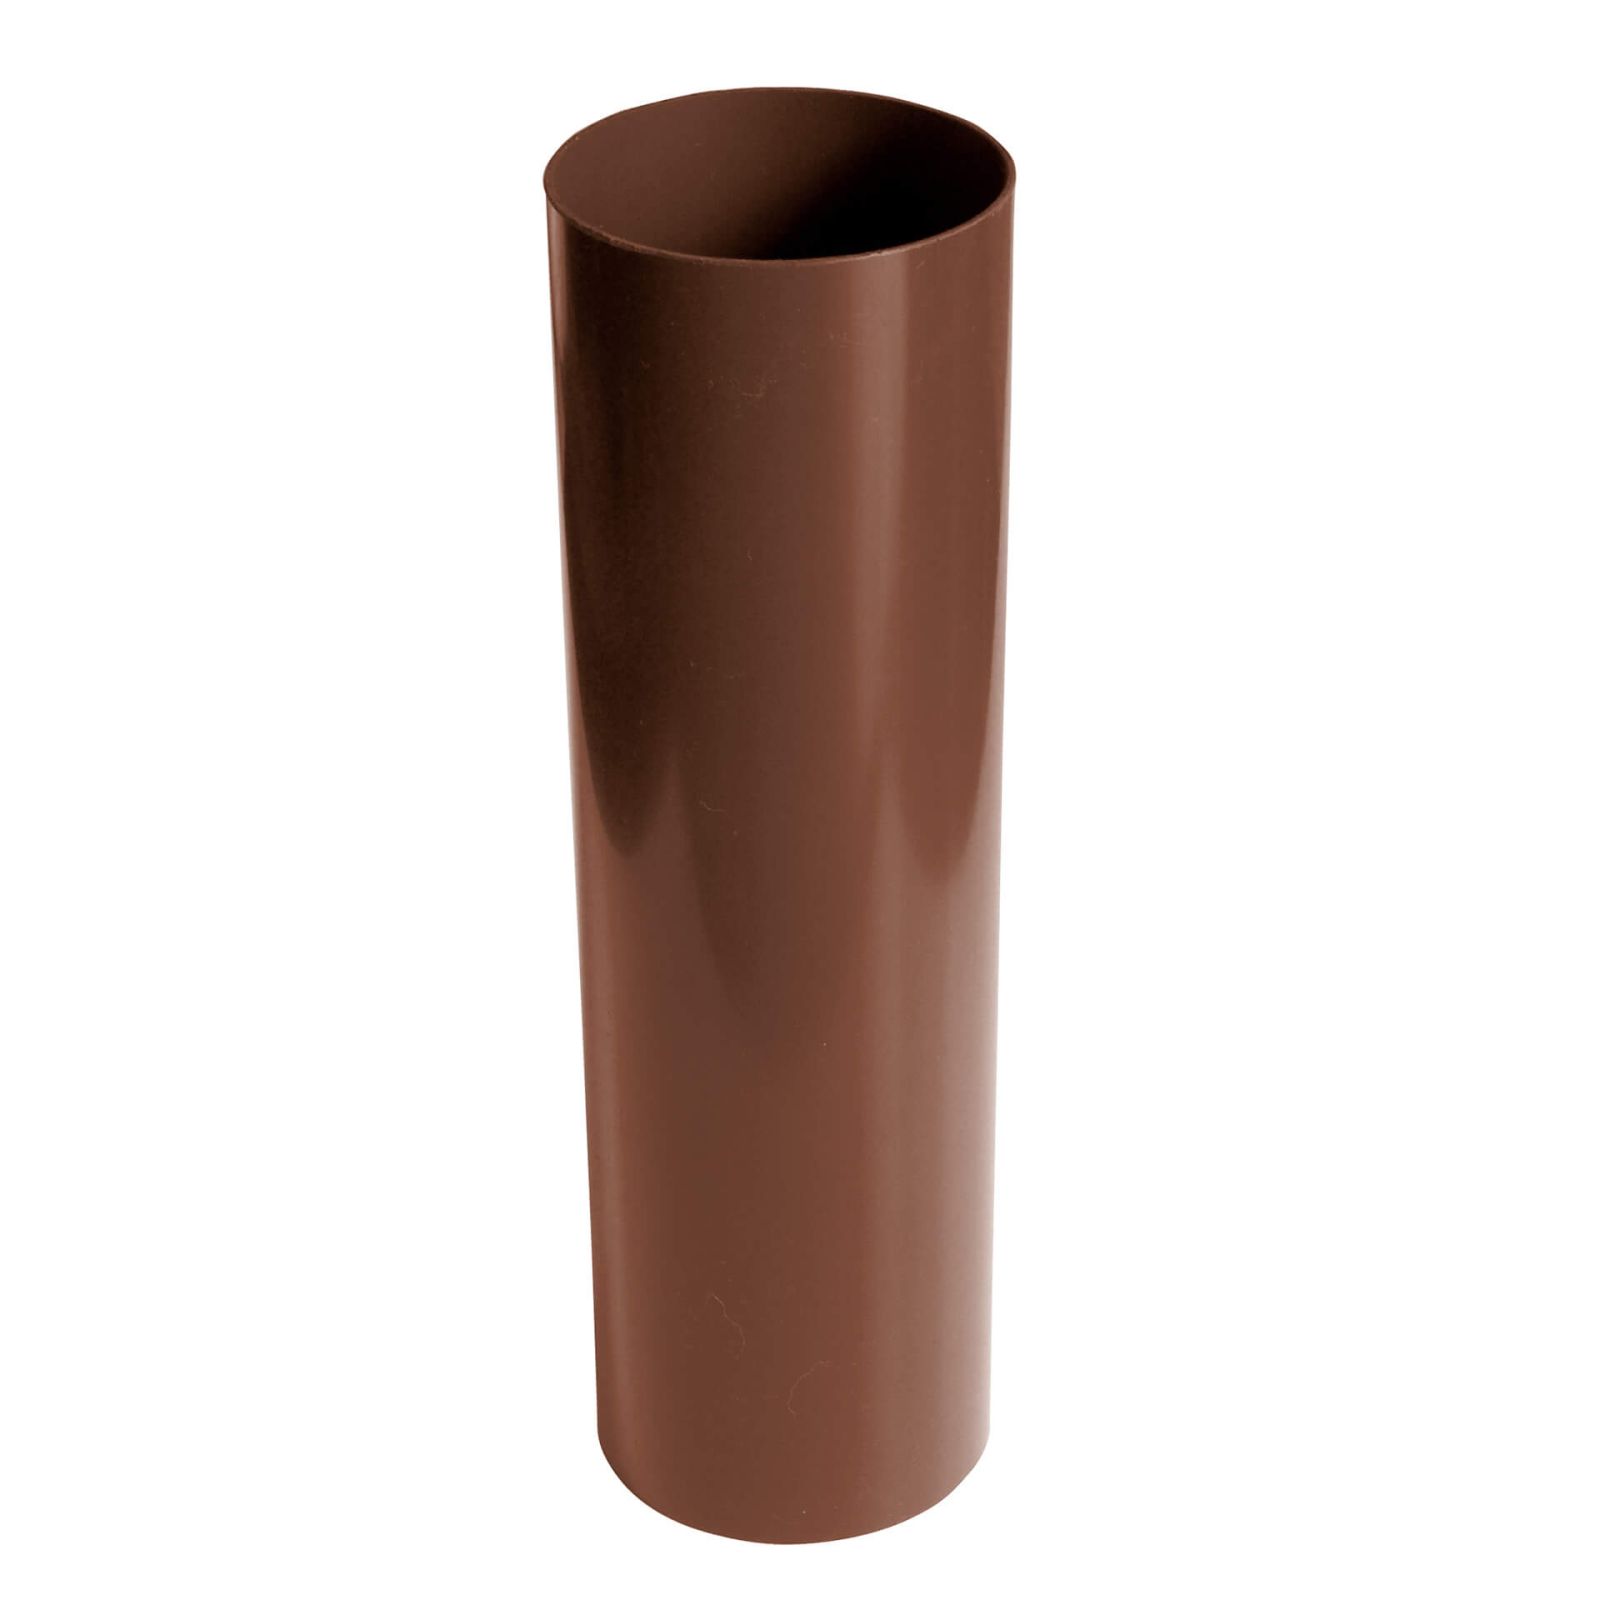 Kunststoff Dachrinnen Sparpaket 6 m | Ø 125/90 mm | Farbe Braun #8